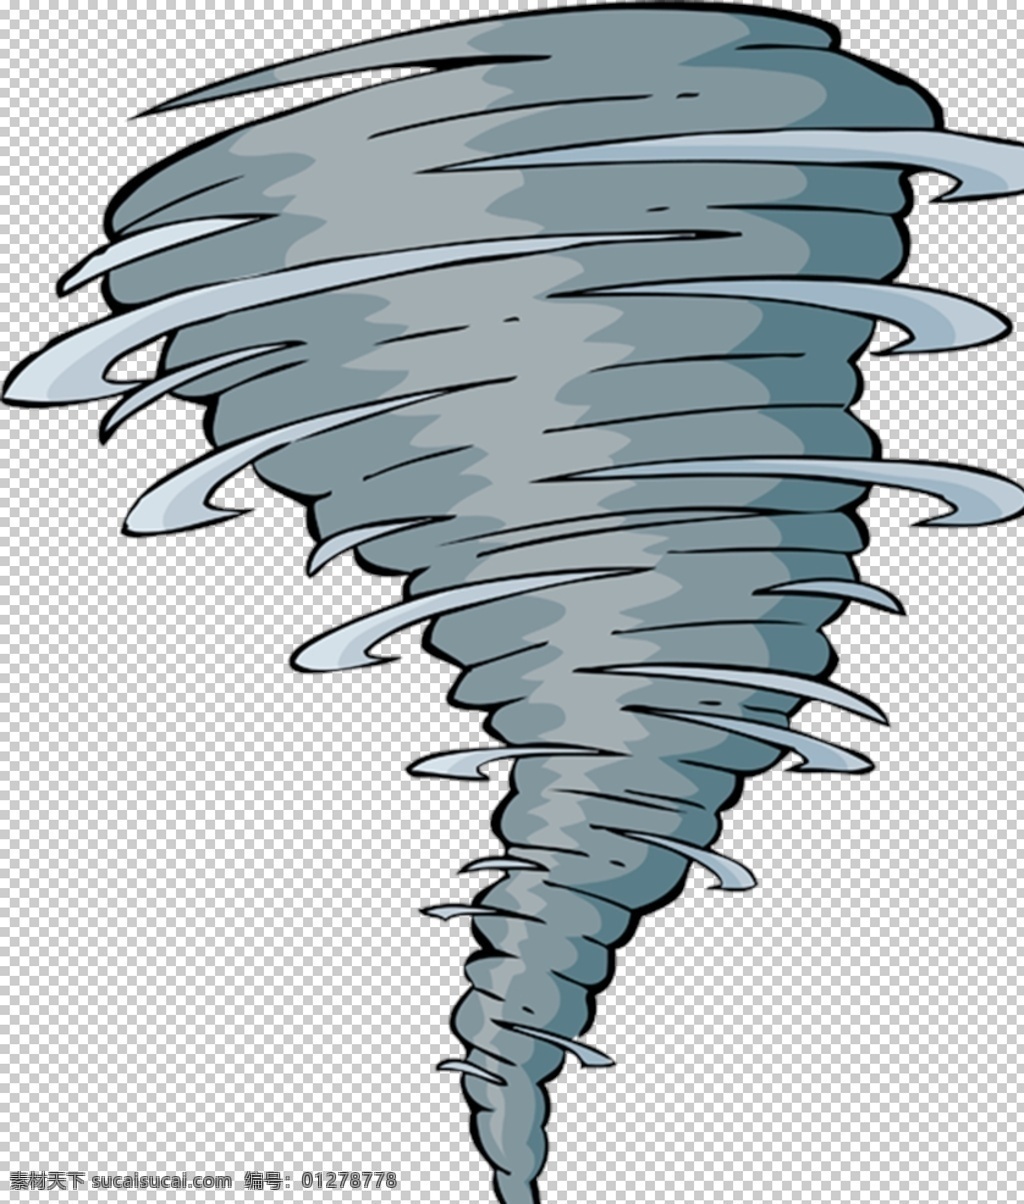 龙卷风 飓风 台风 风 旋风 png图 透明图 免扣图 透明背景 透明底 抠图 插画 手绘 卡通